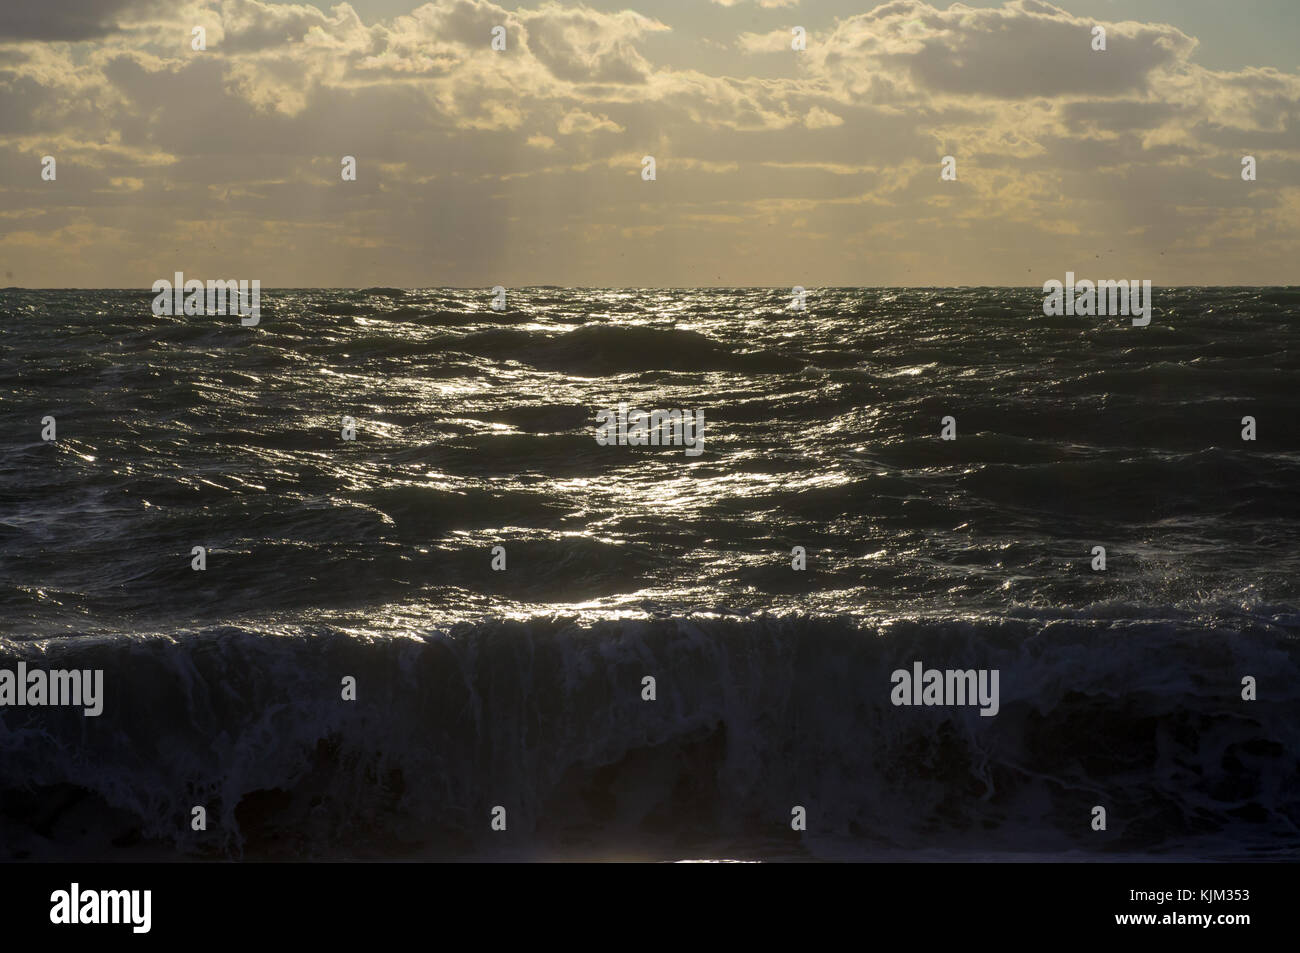 Tempesta in mare i raggi del sole al tramonto, l'onda batte contro la riva Foto Stock